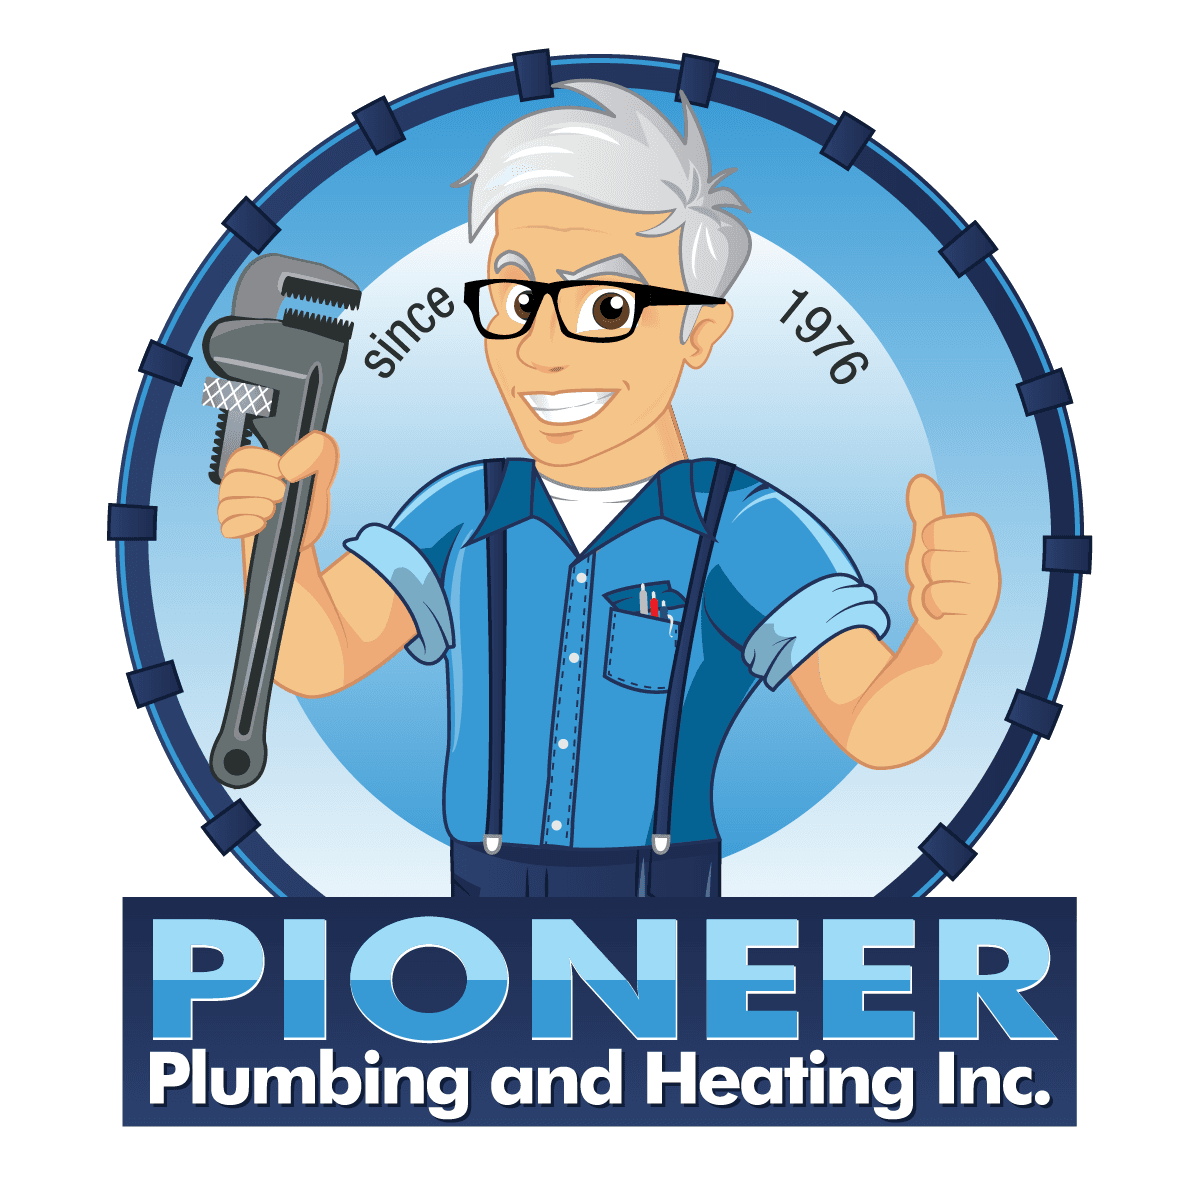 Pioneer Plumbing and Heating Ltd